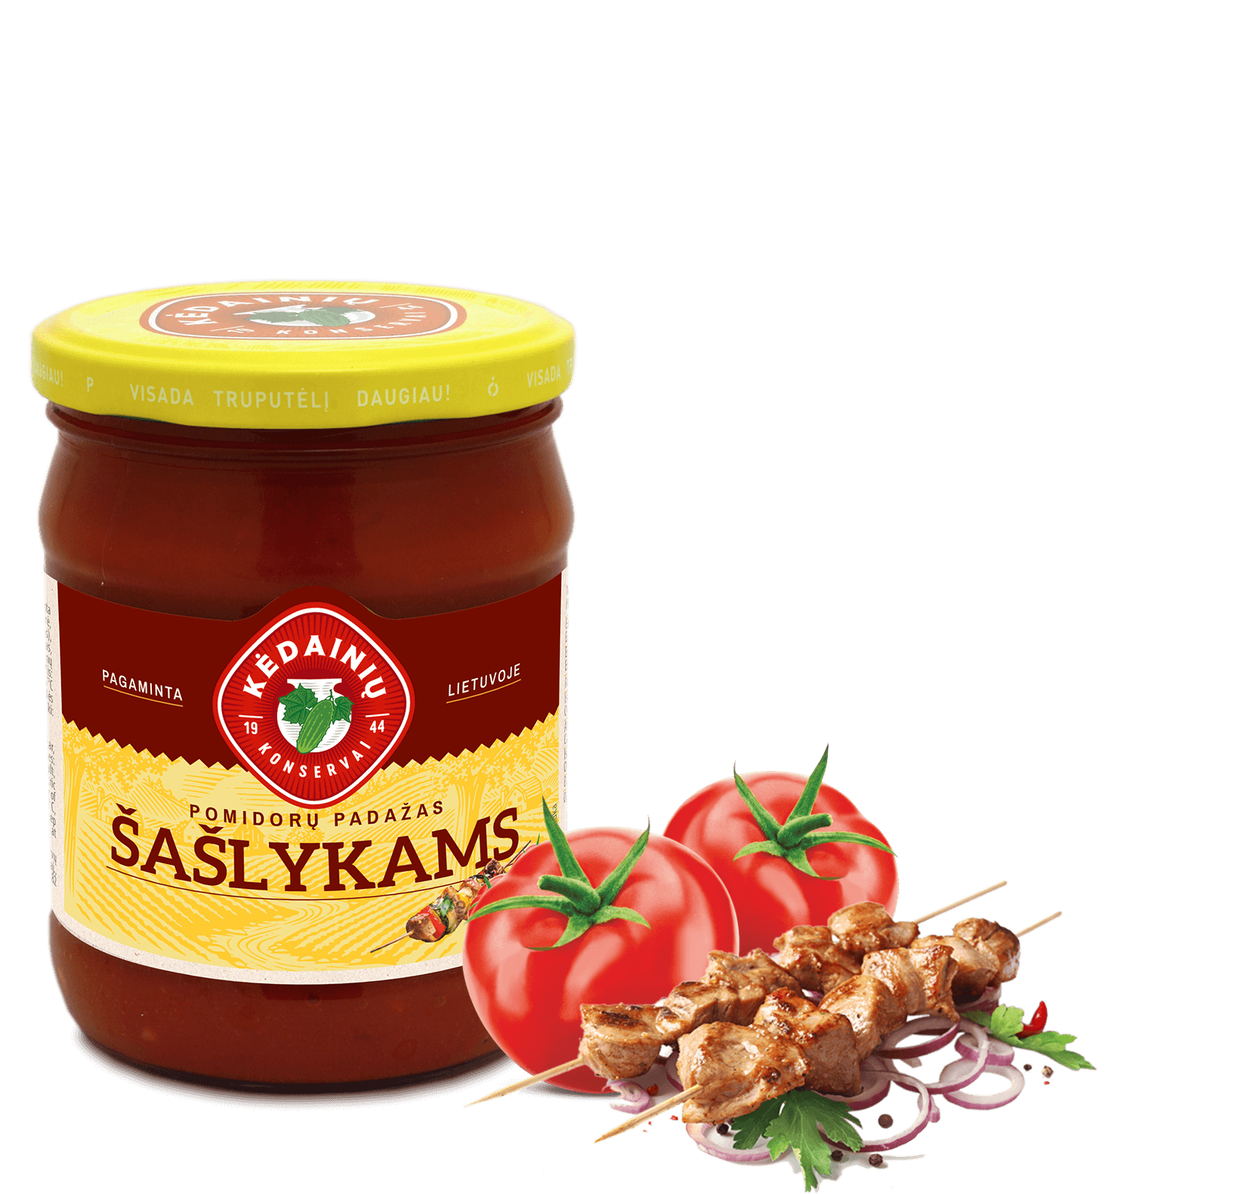 Pomidoru-PADAZAS-saslykams-new